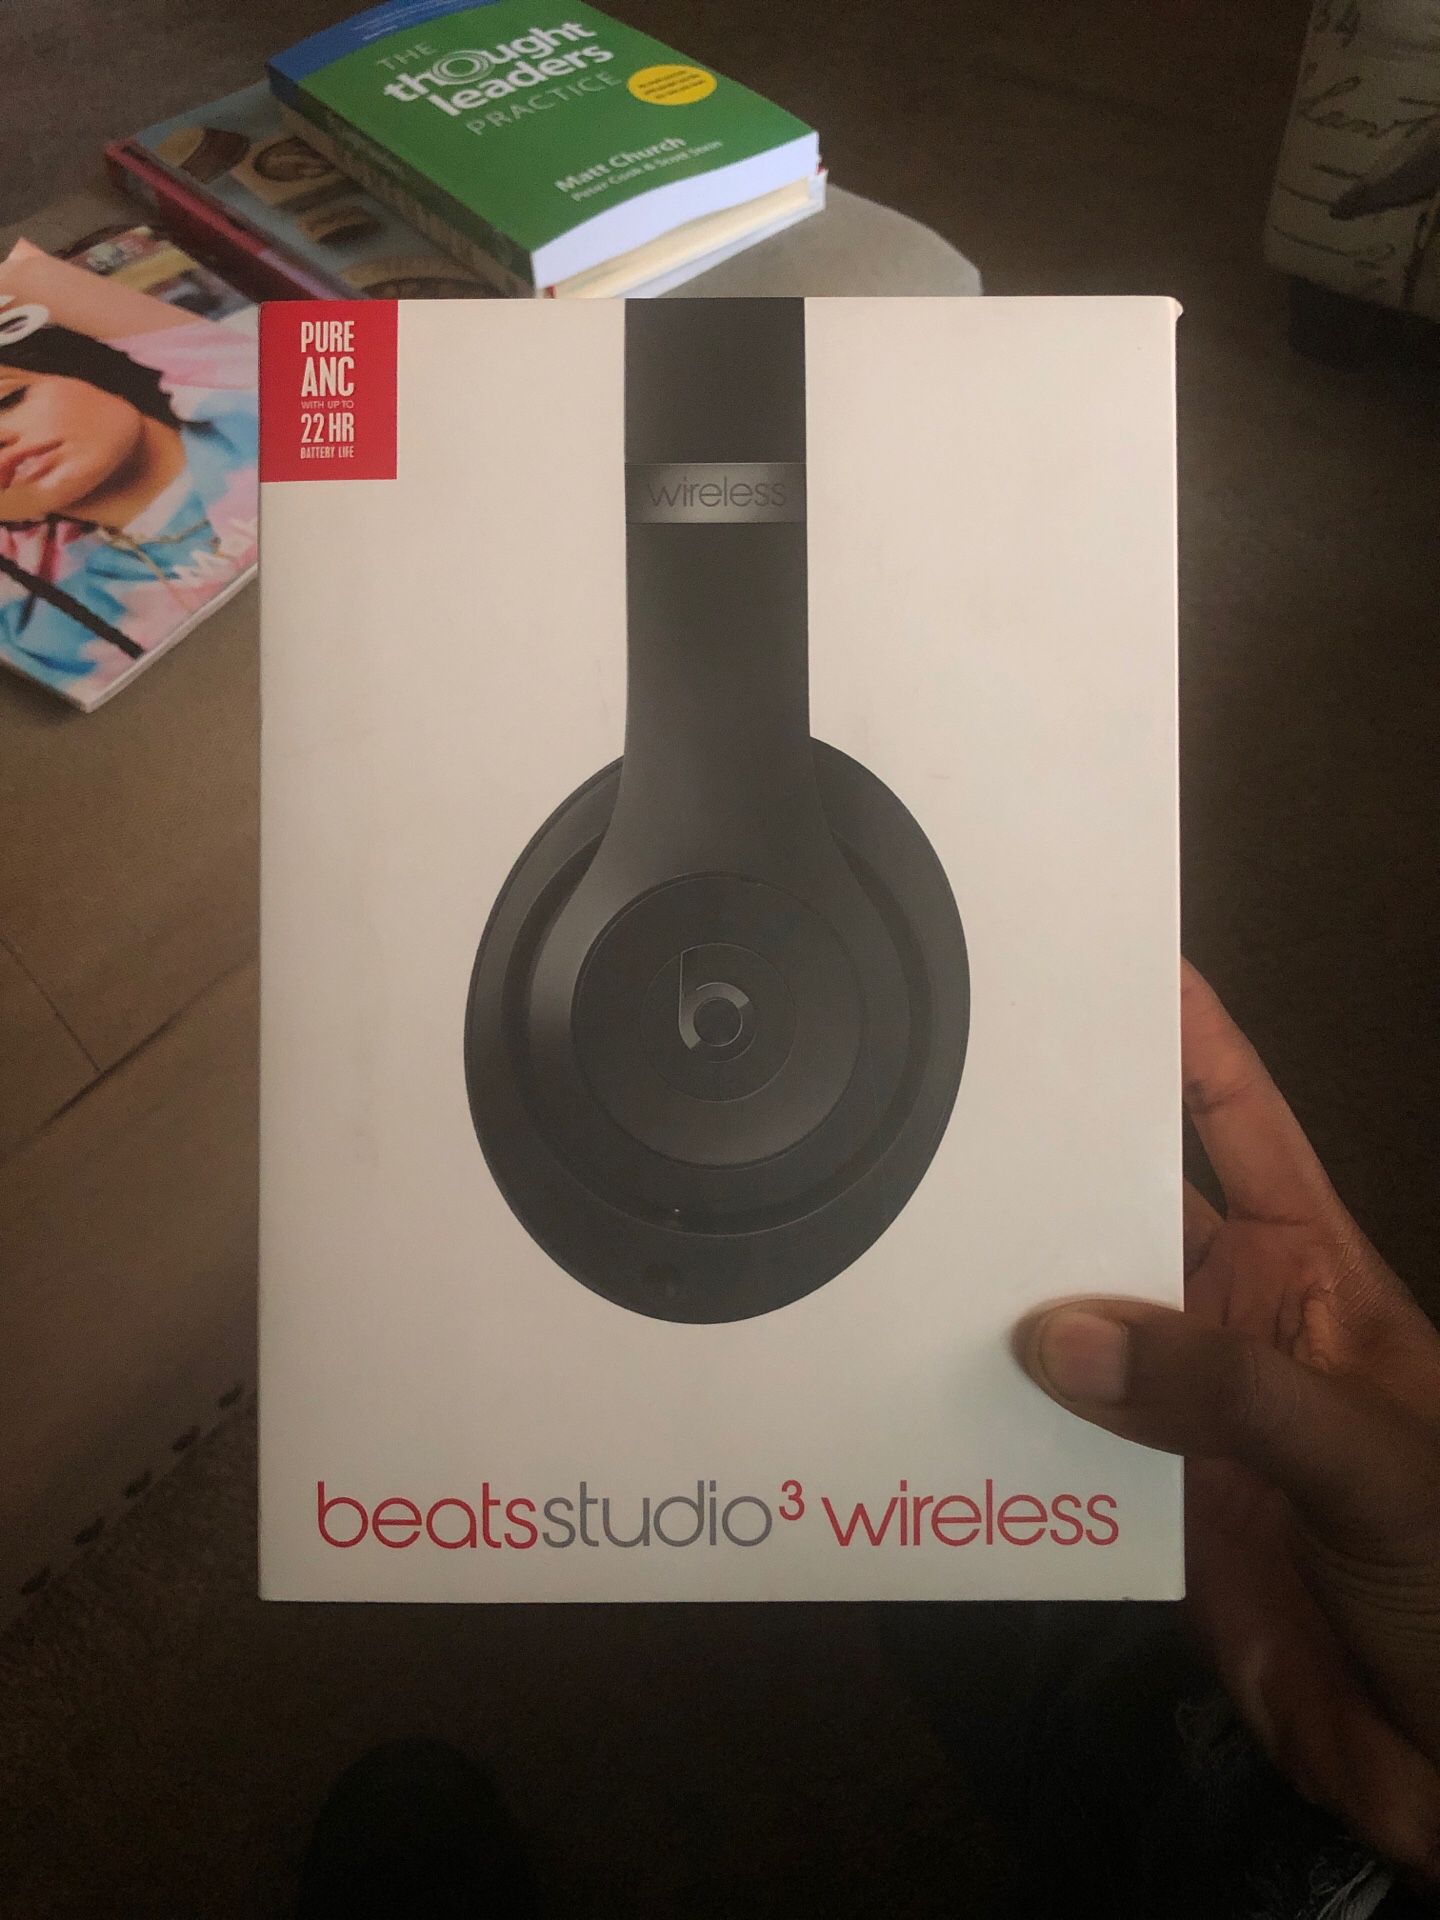 Beats studio 3 wireless headphones